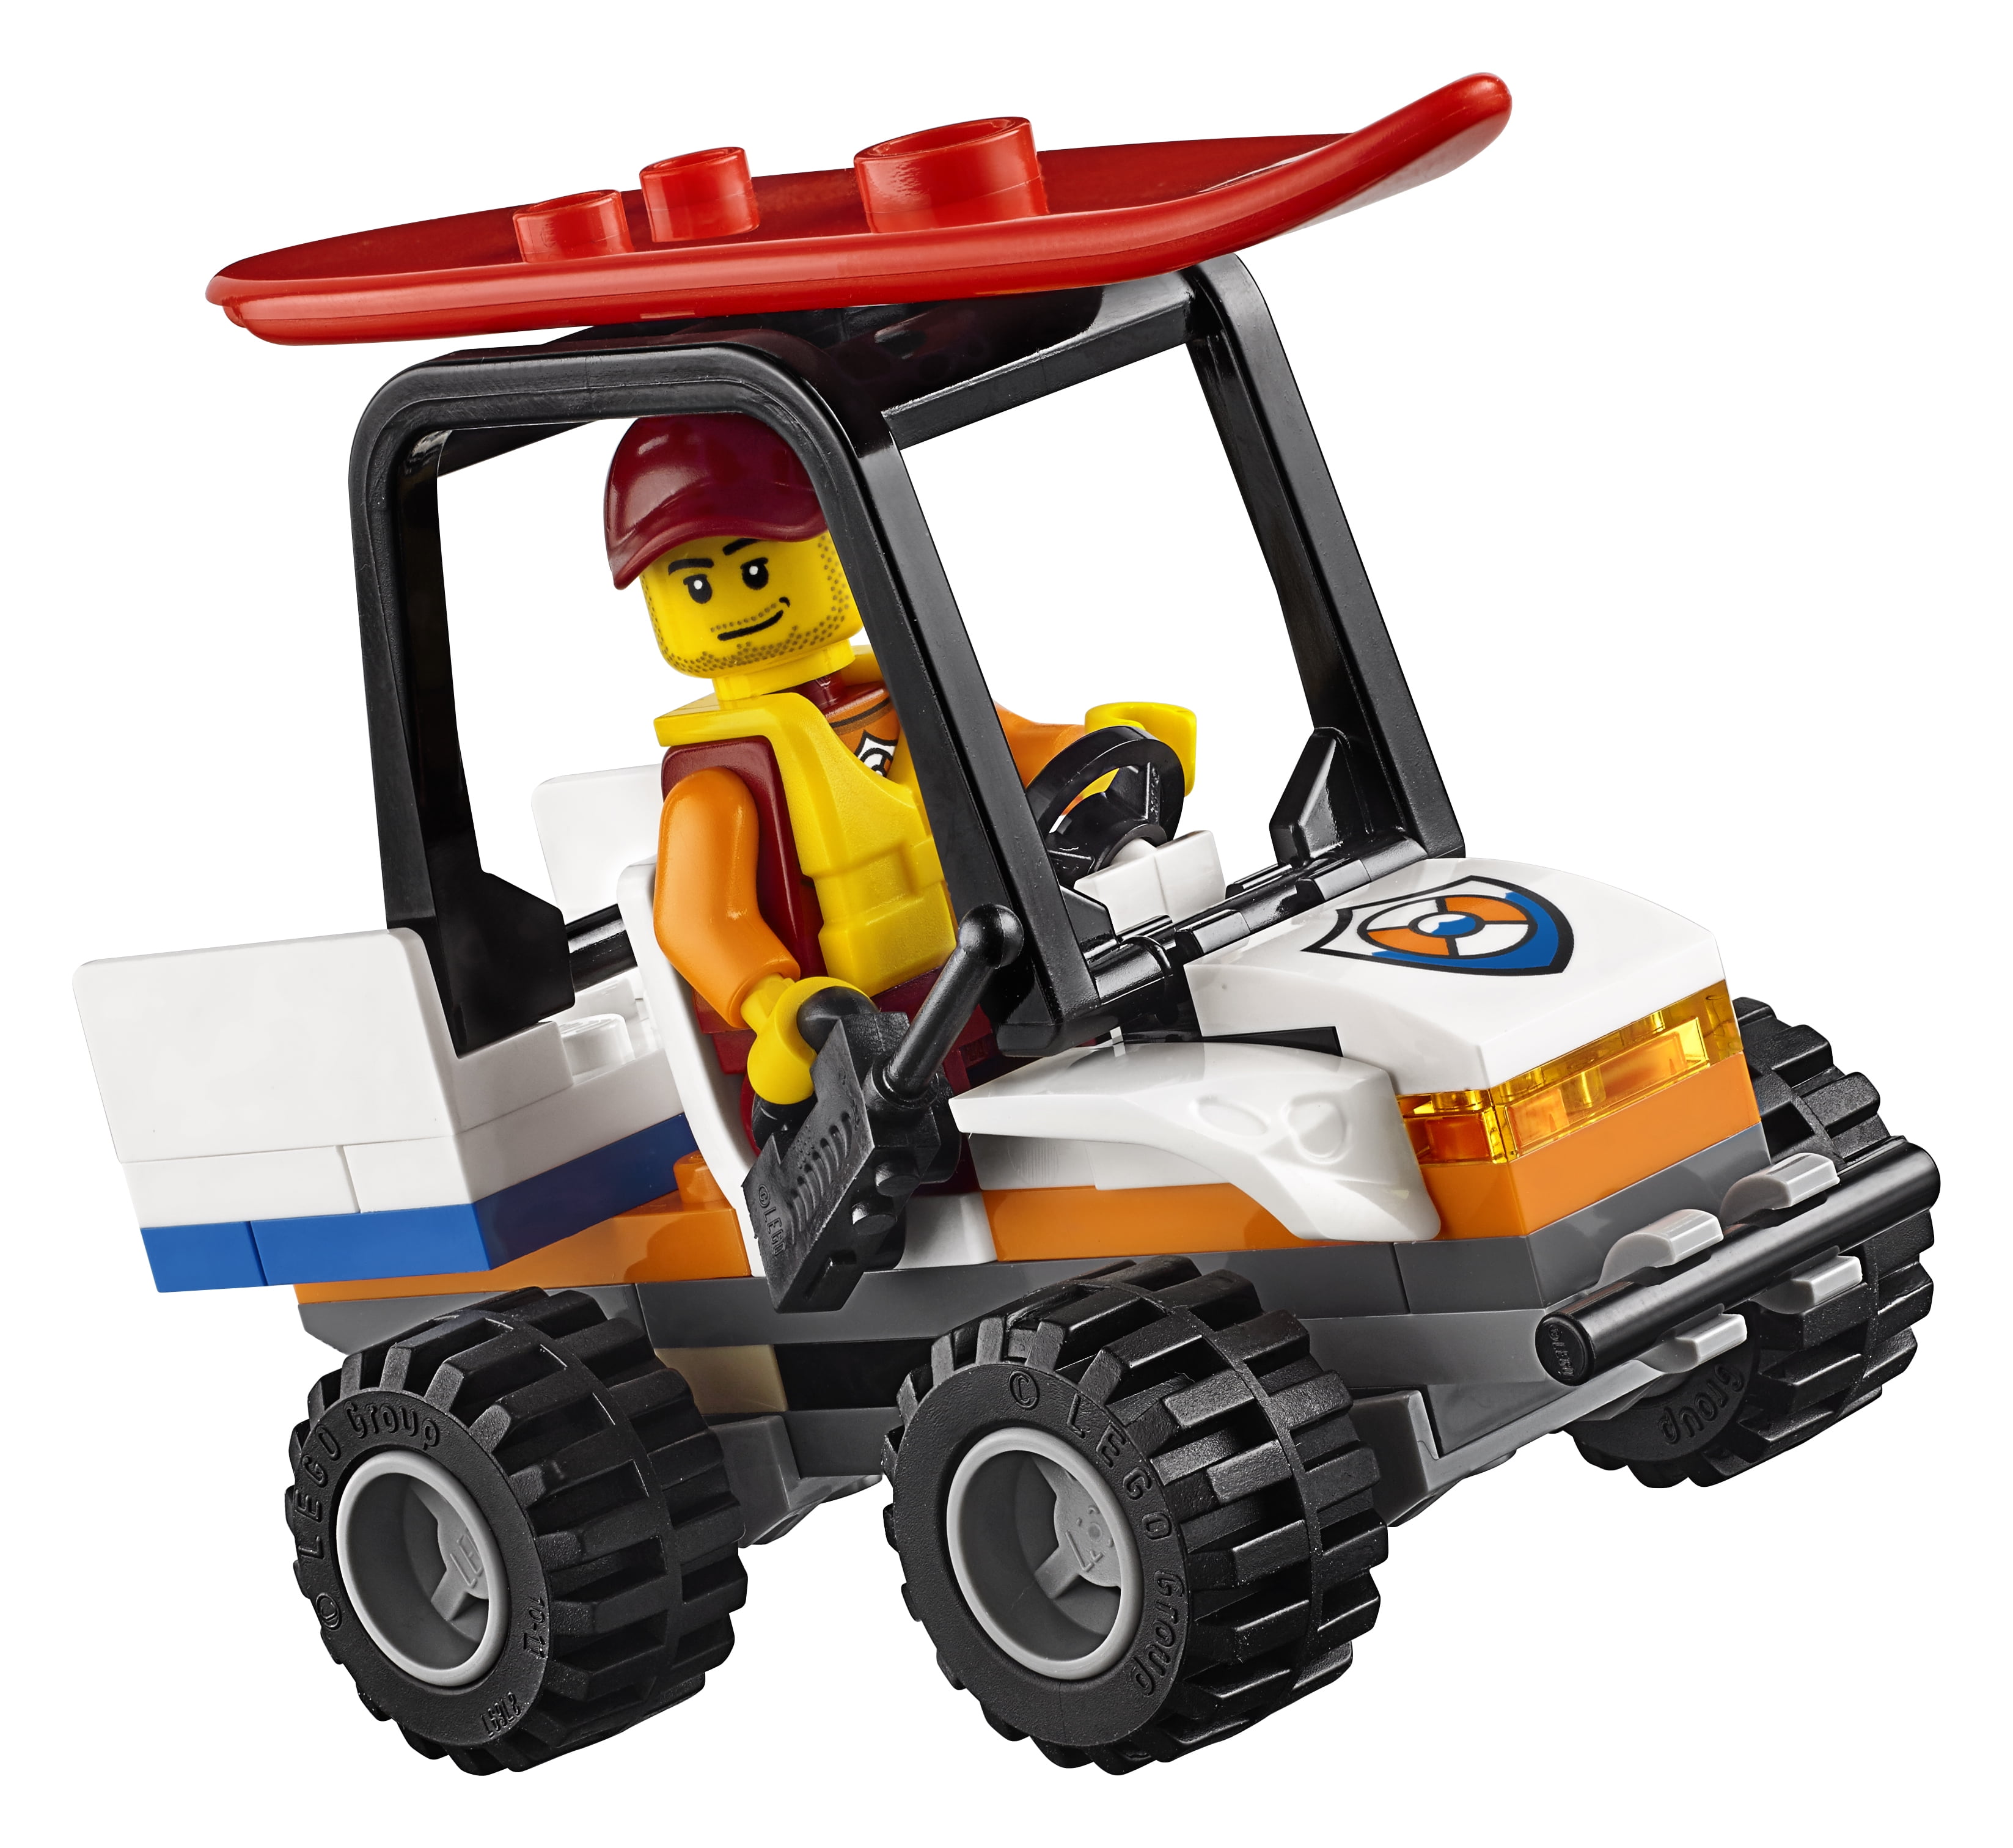 76 Piece LEGO City Coast Guard Coast Guard Starter Set 60163 Building Kit 